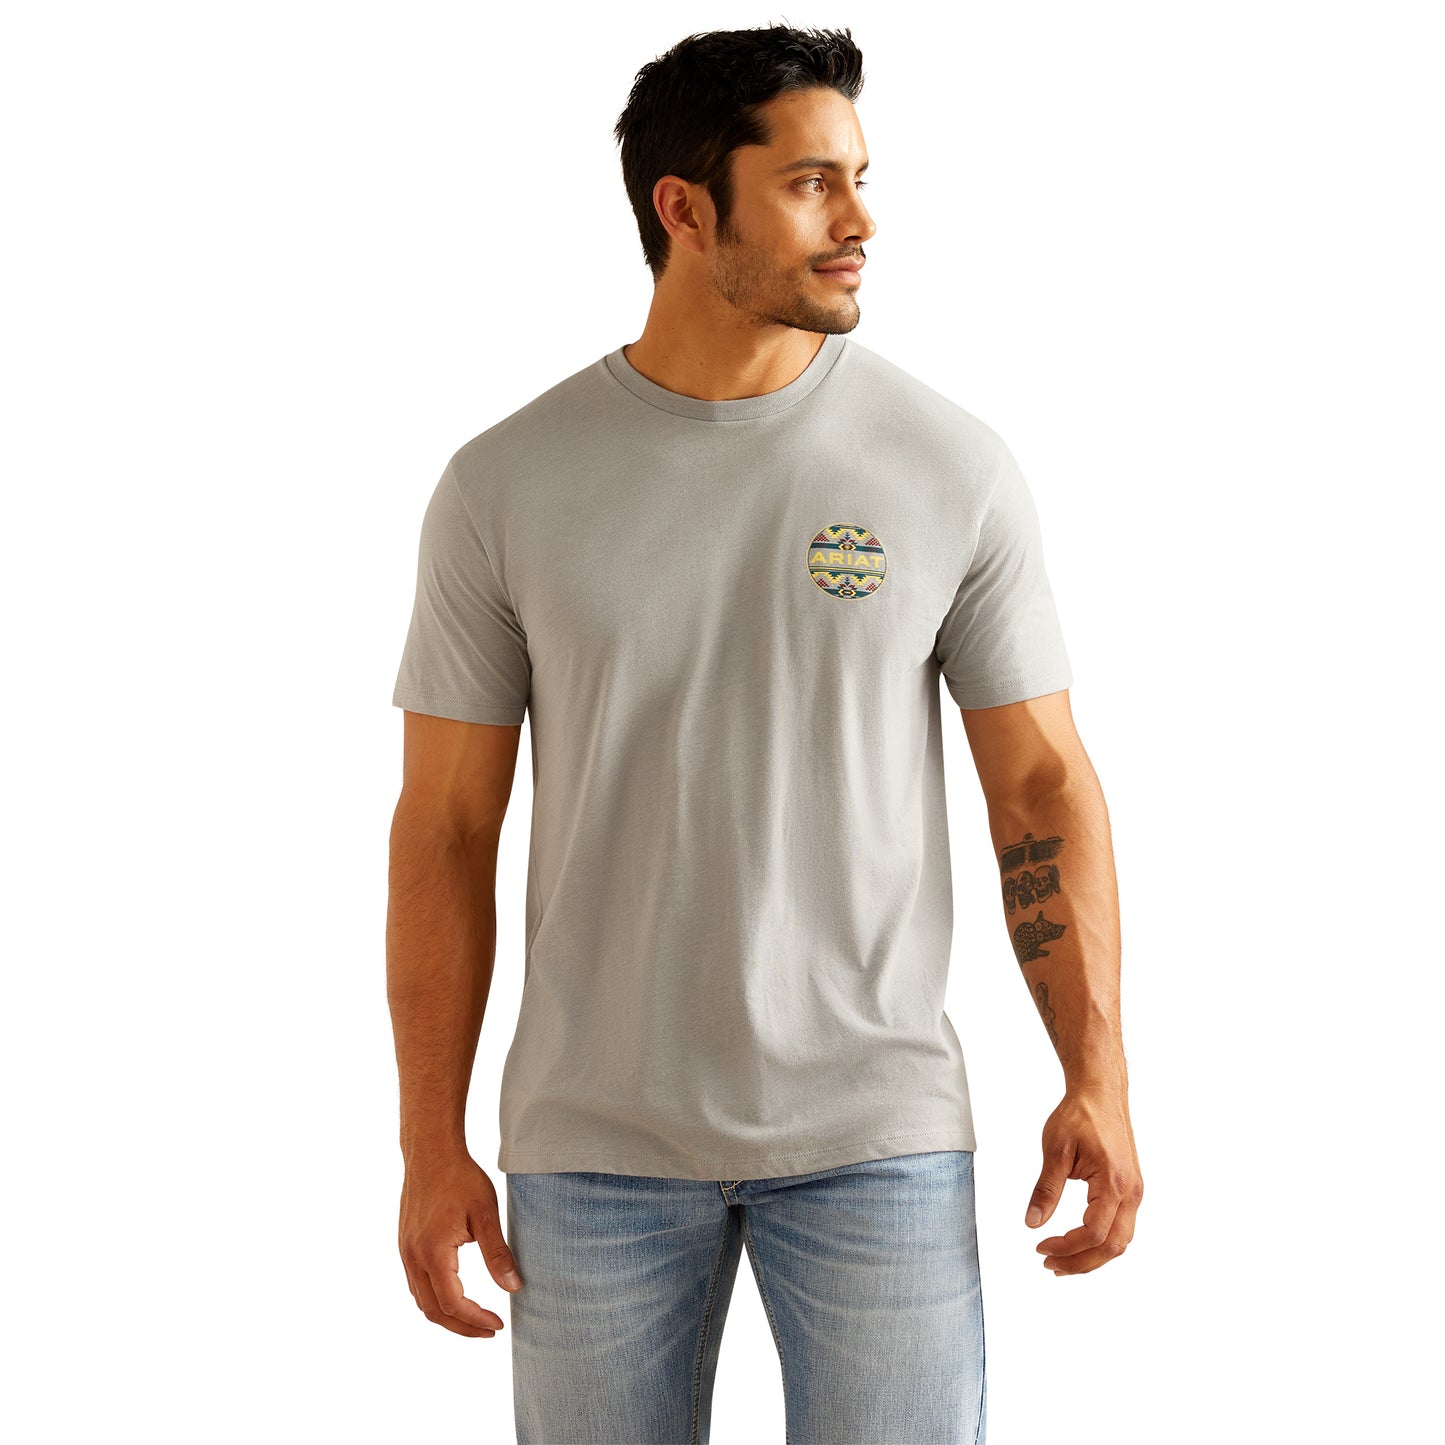 Ariat Men's Western Geo Graphic Stone Heather T-Shirt 10051446